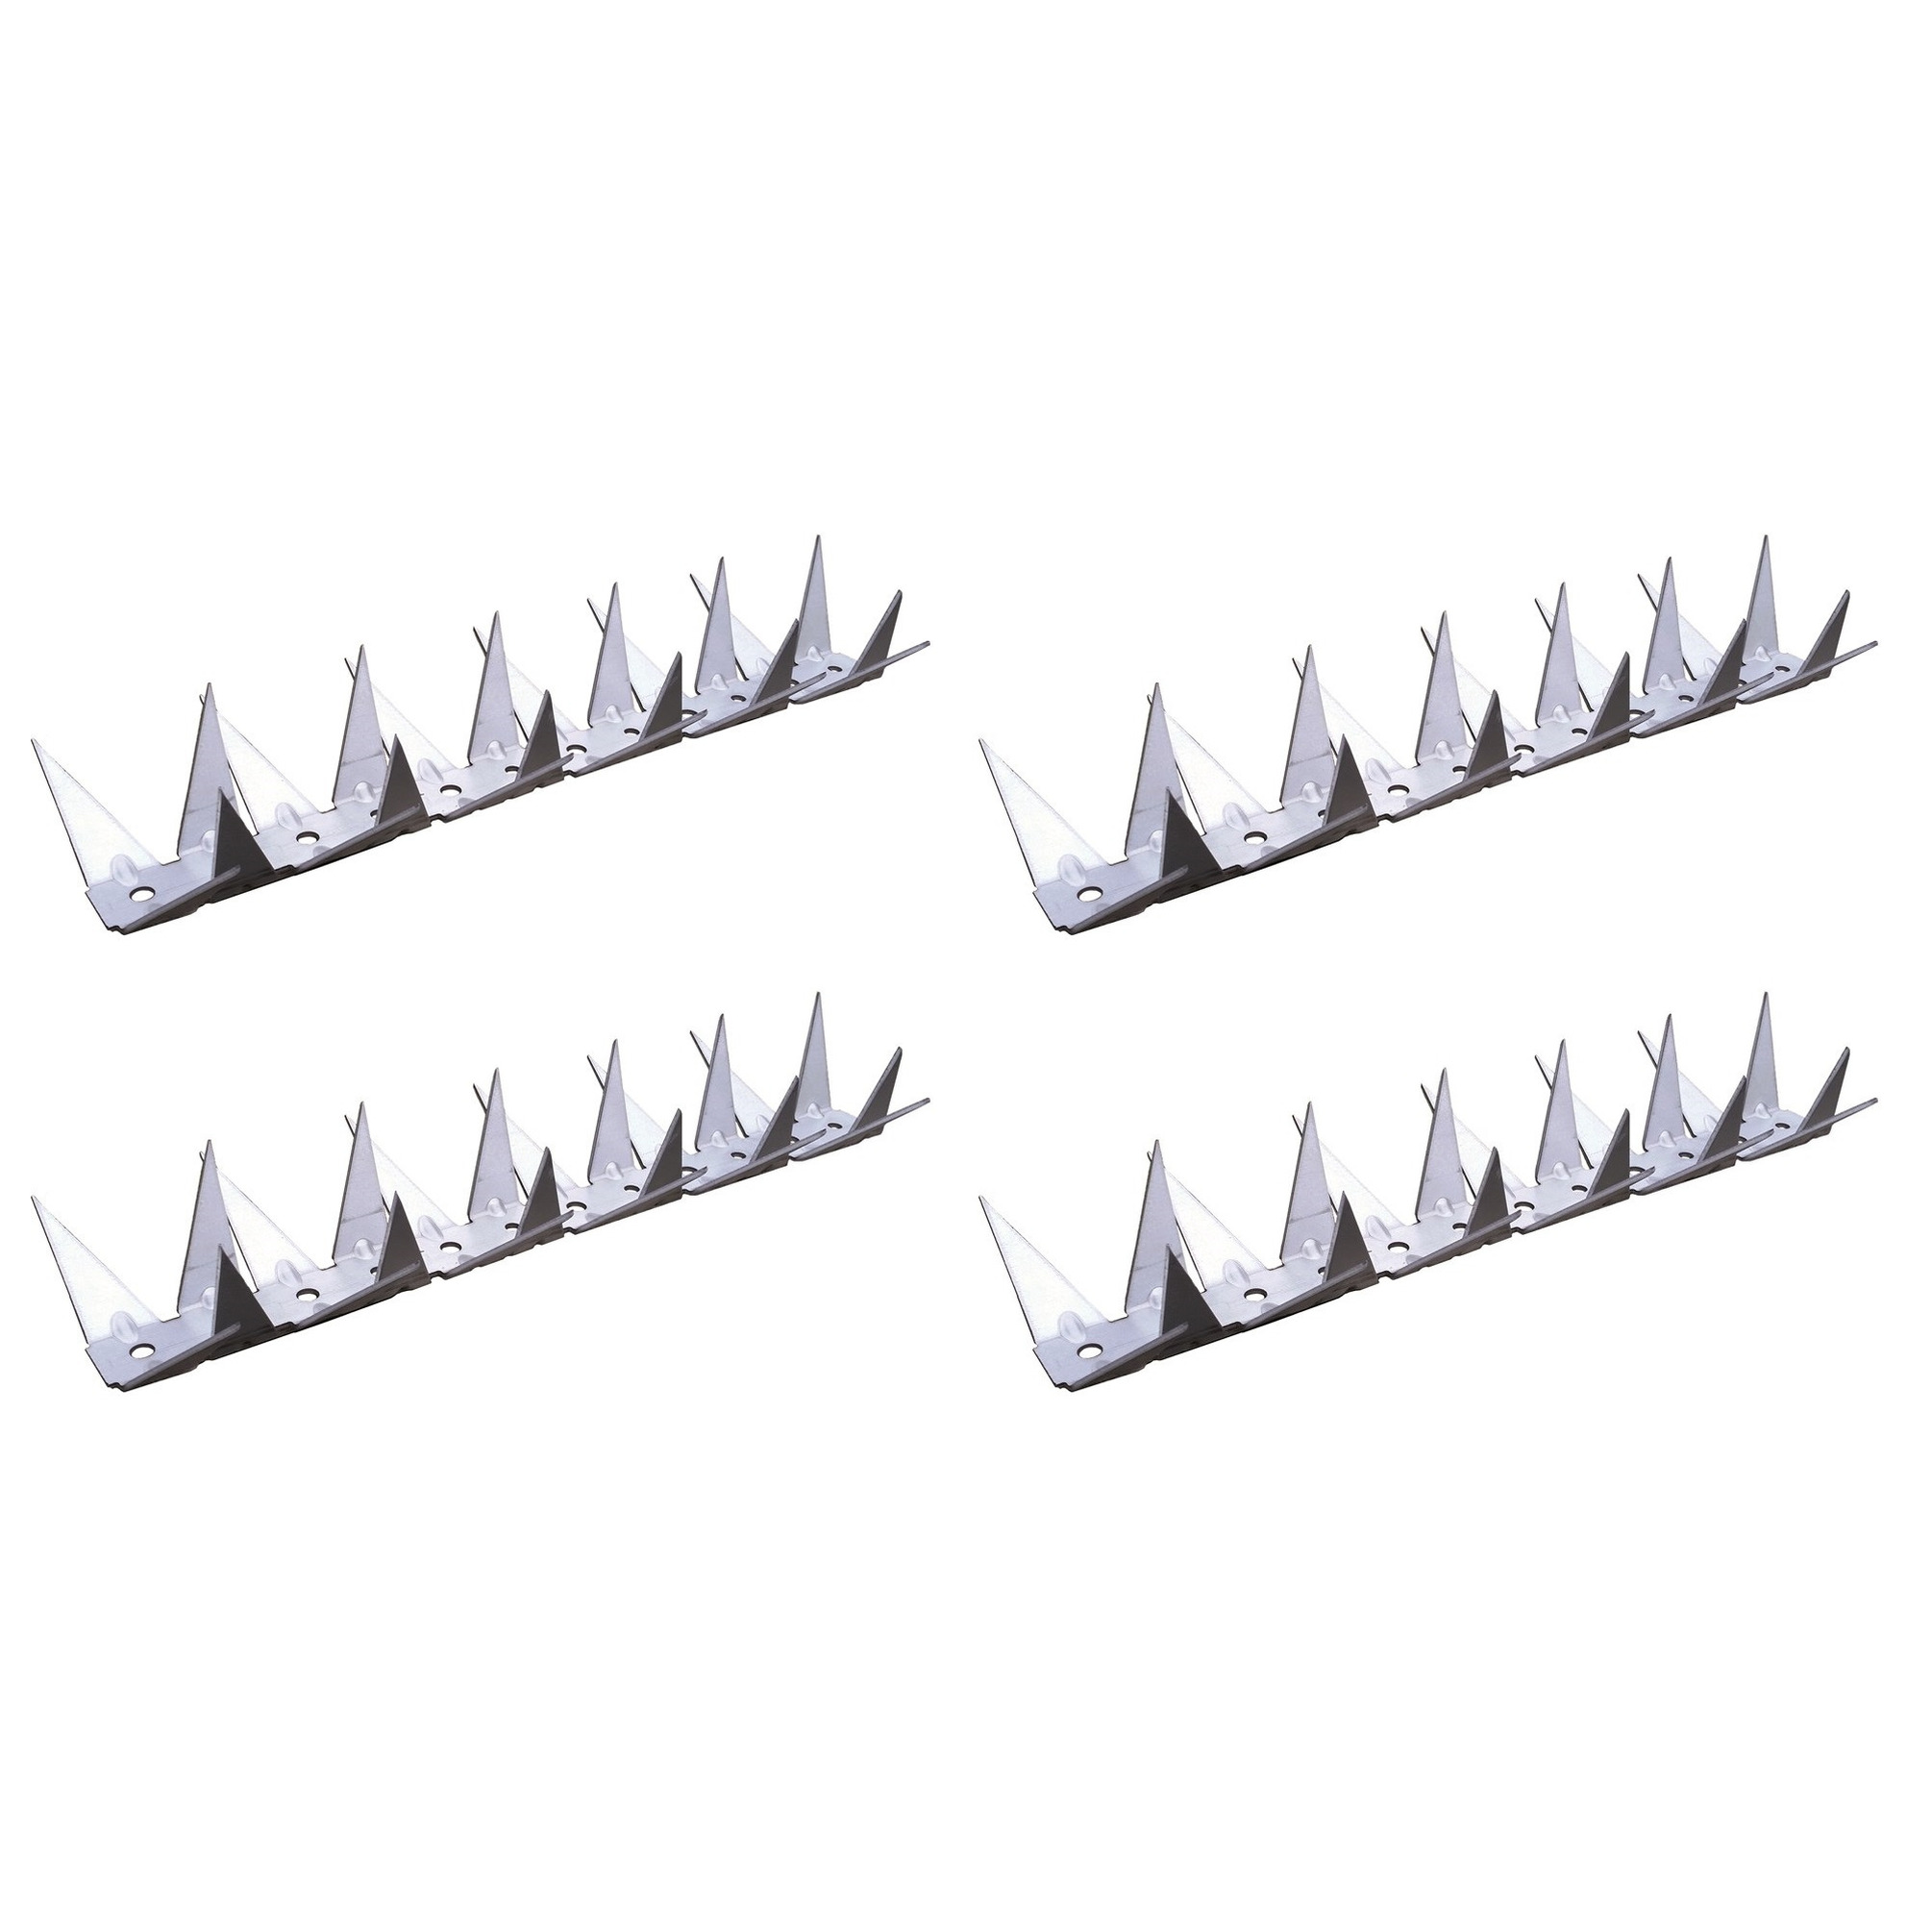 15x stuks metalen anti inbraak strips met punten-pinnen 1 meter